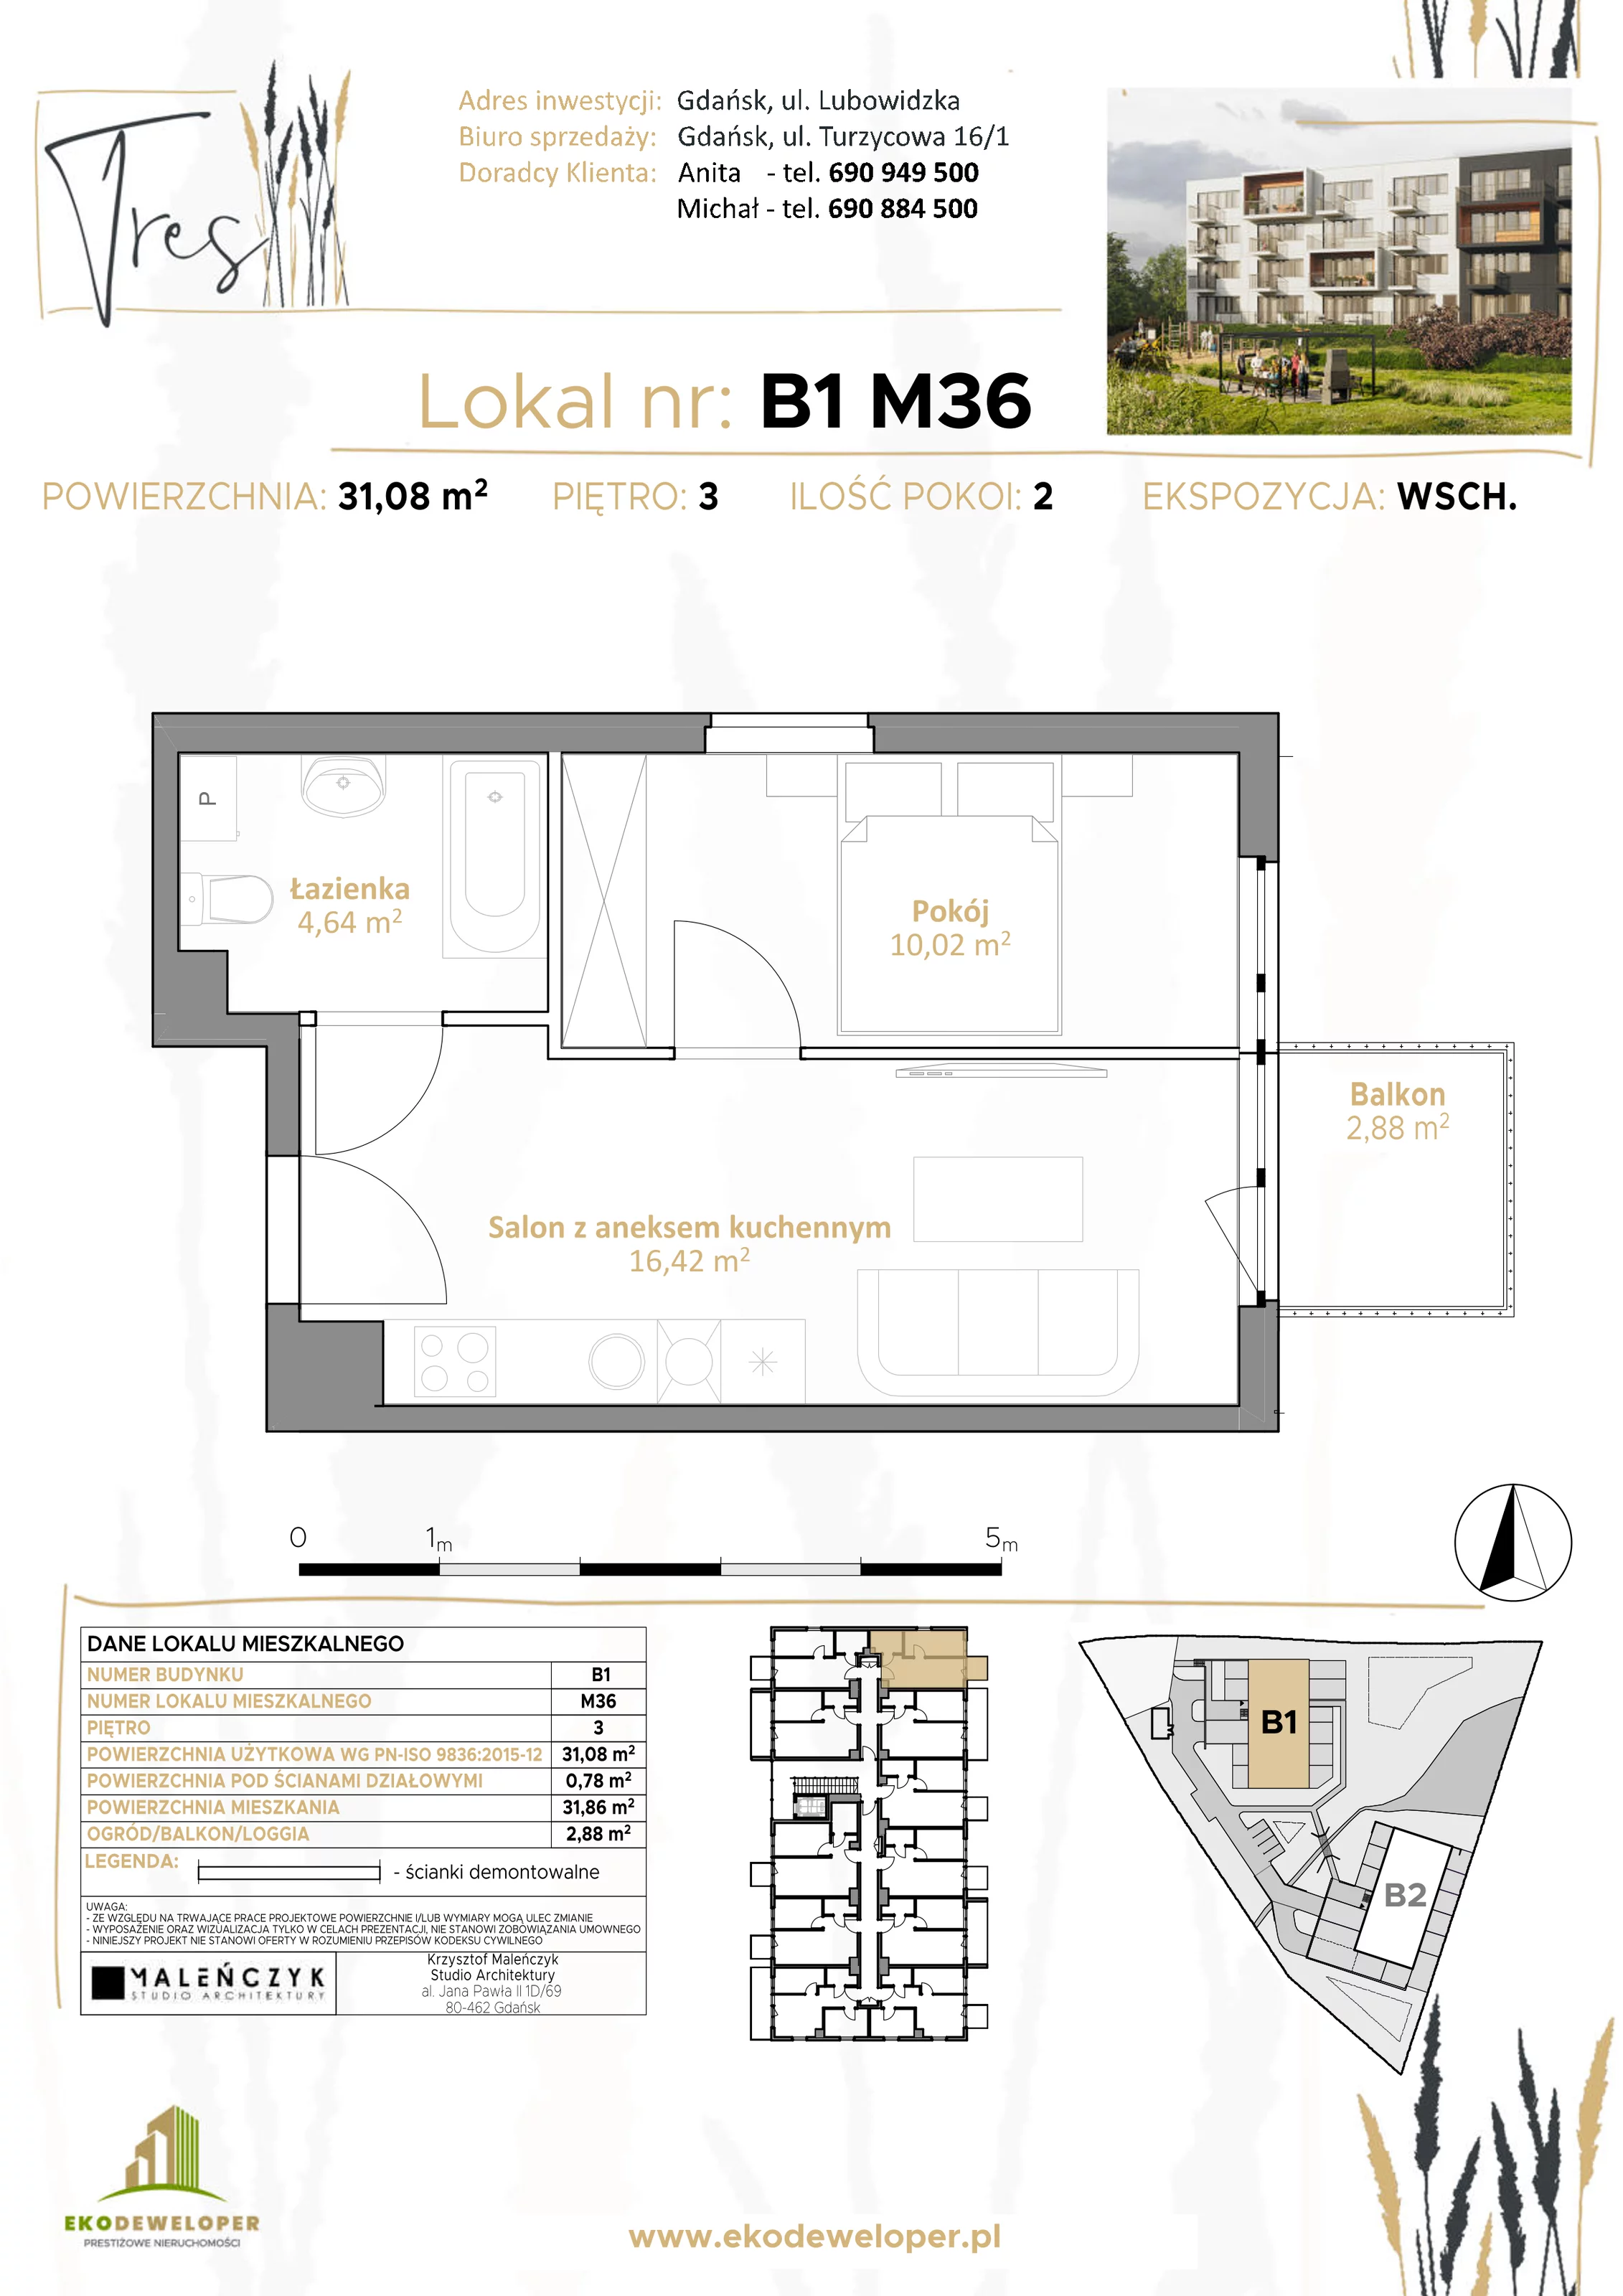 Mieszkanie 31,08 m², piętro 3, oferta nr B1.M36, Tres, Gdańsk, Jasień, ul. Lubowidzka